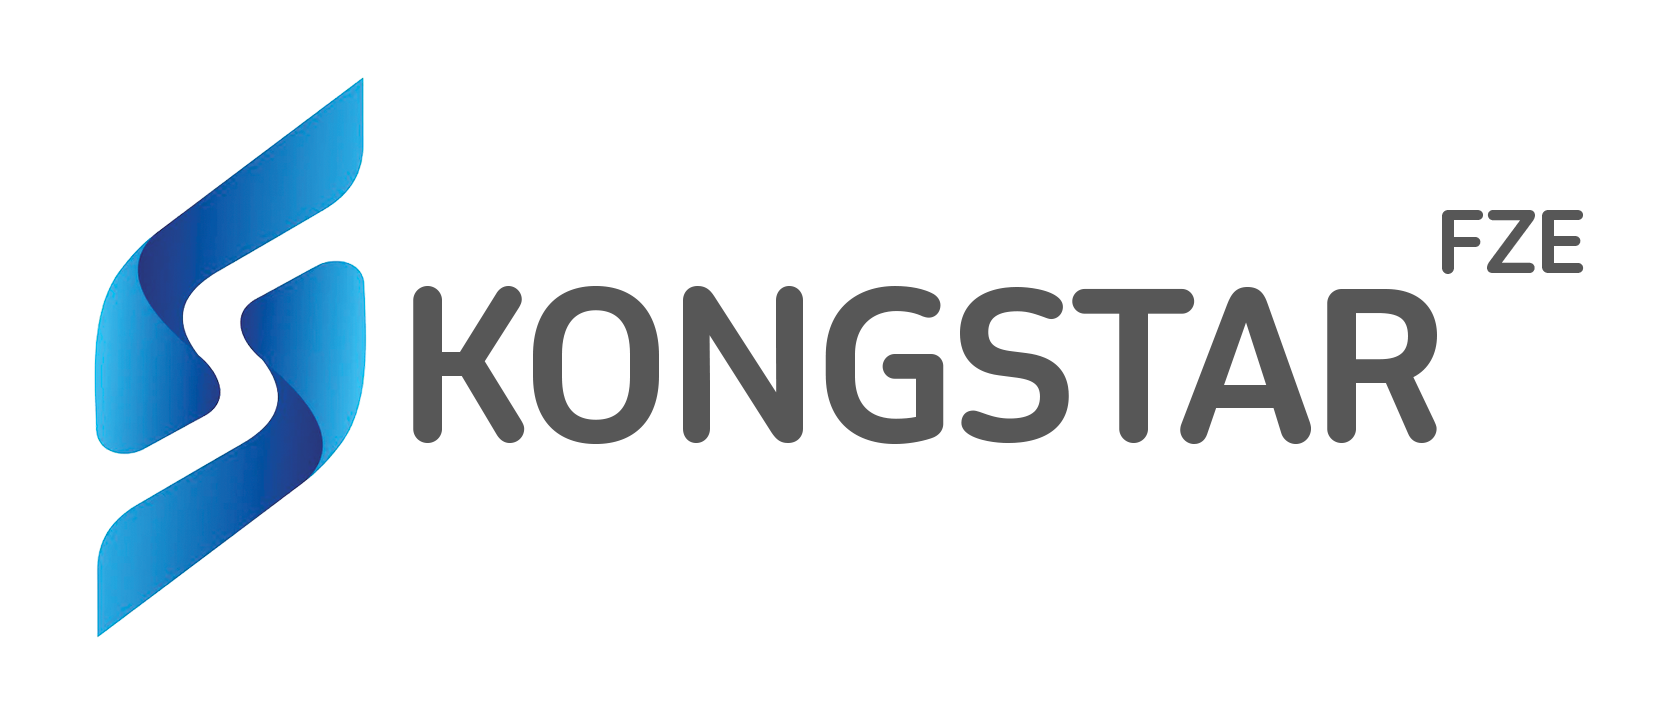 KongStar FZE